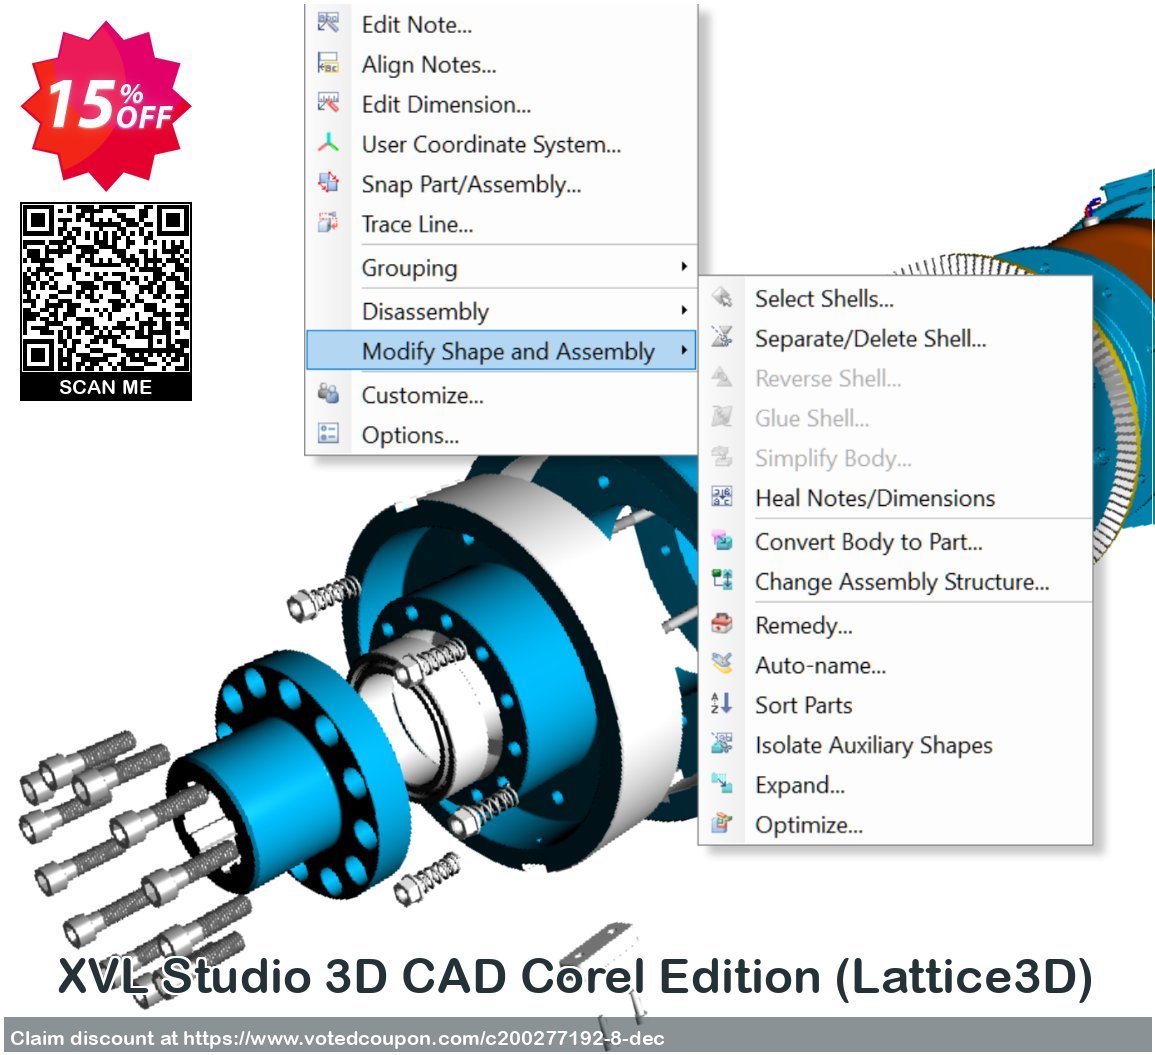 XVL Studio 3D CAD Corel Edition, Lattice3D  Coupon Code Oct 2023, 15% OFF - VotedCoupon